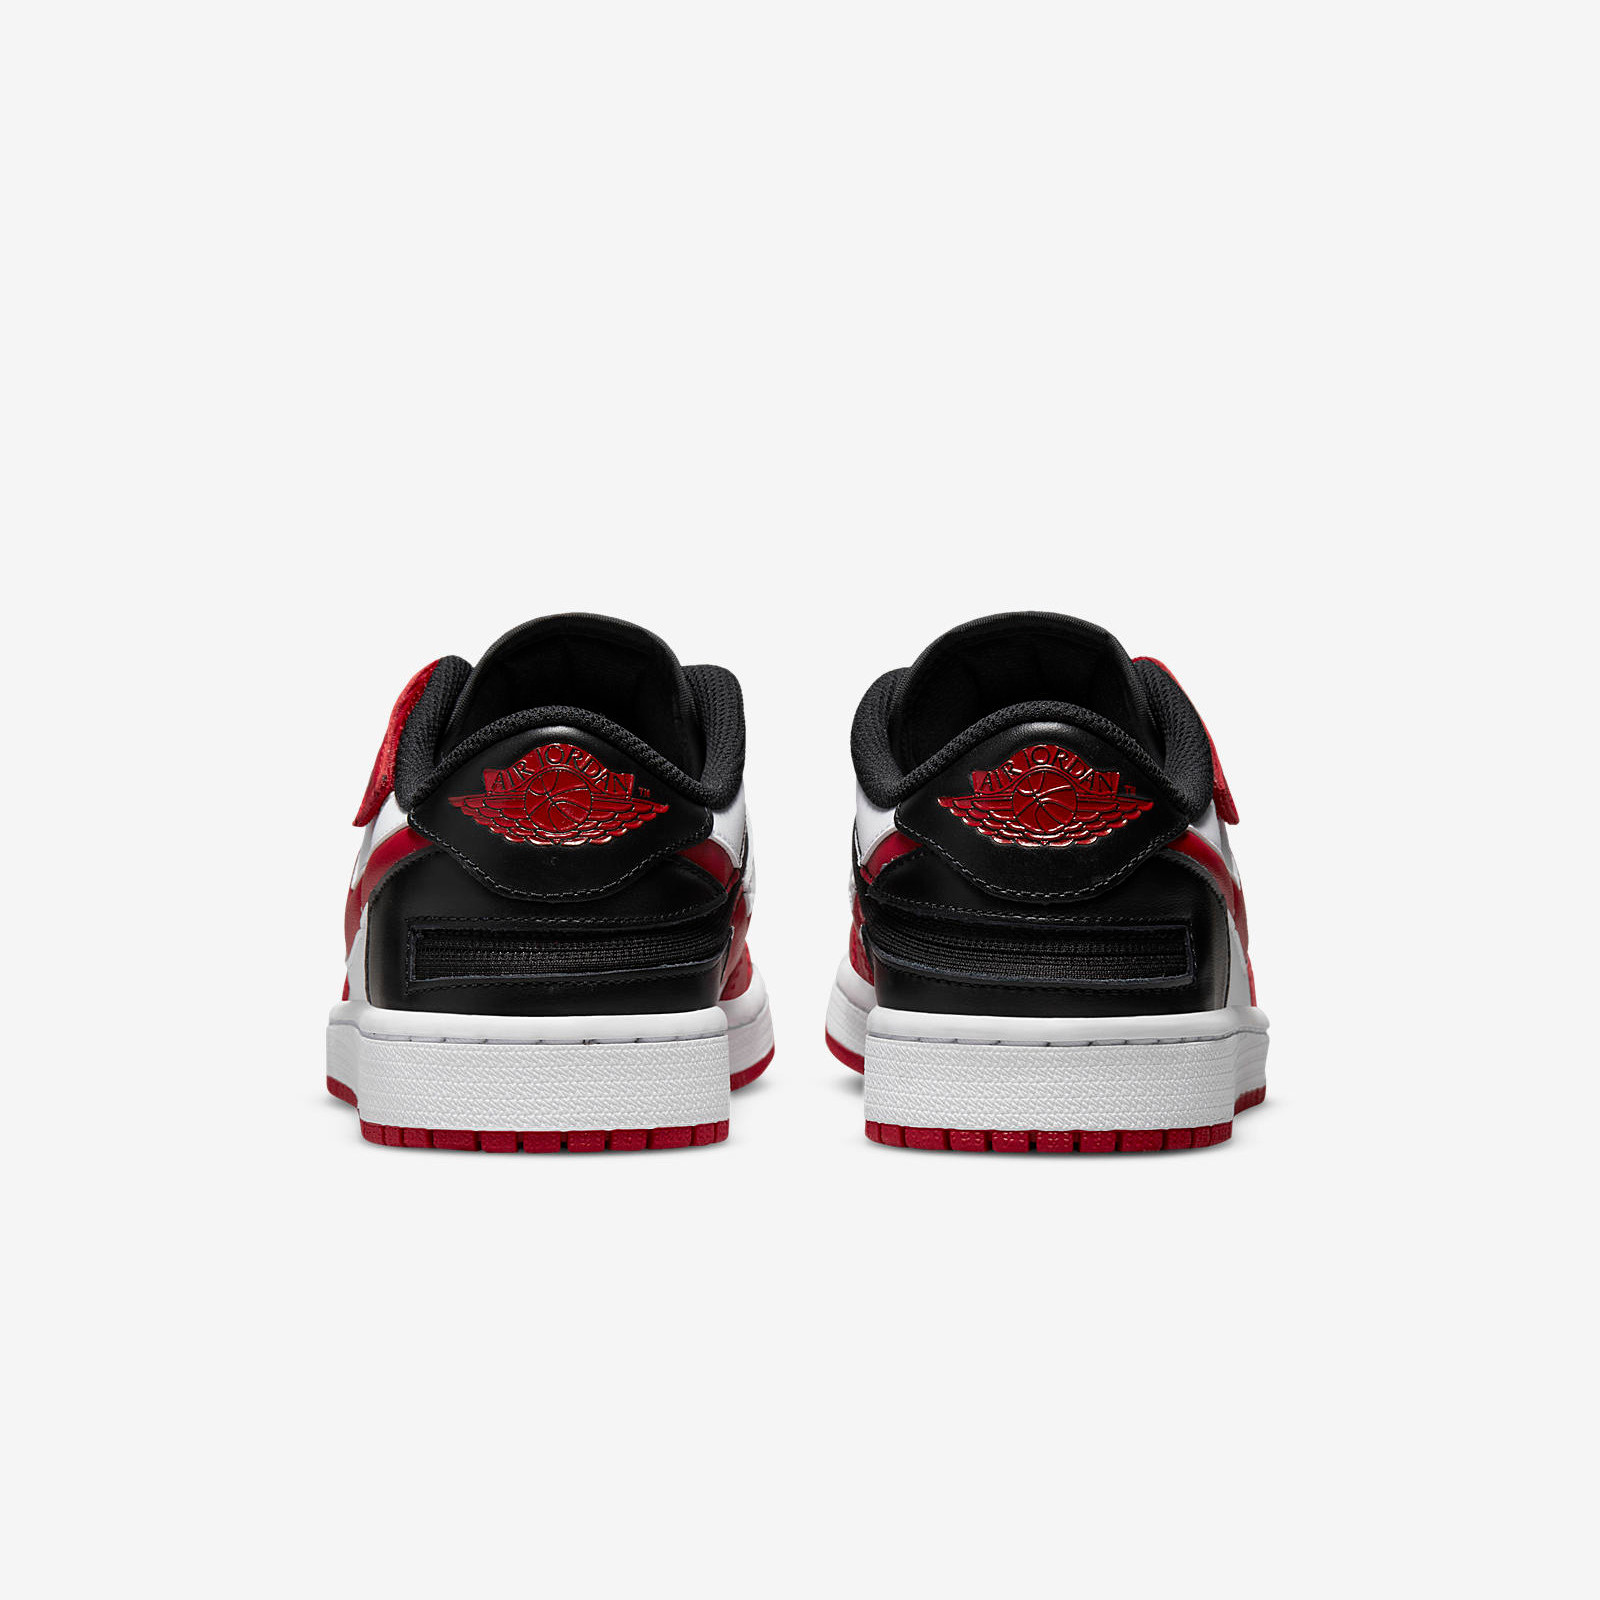 Air Jordan 1 Low FlyEase
Black / Gym Red